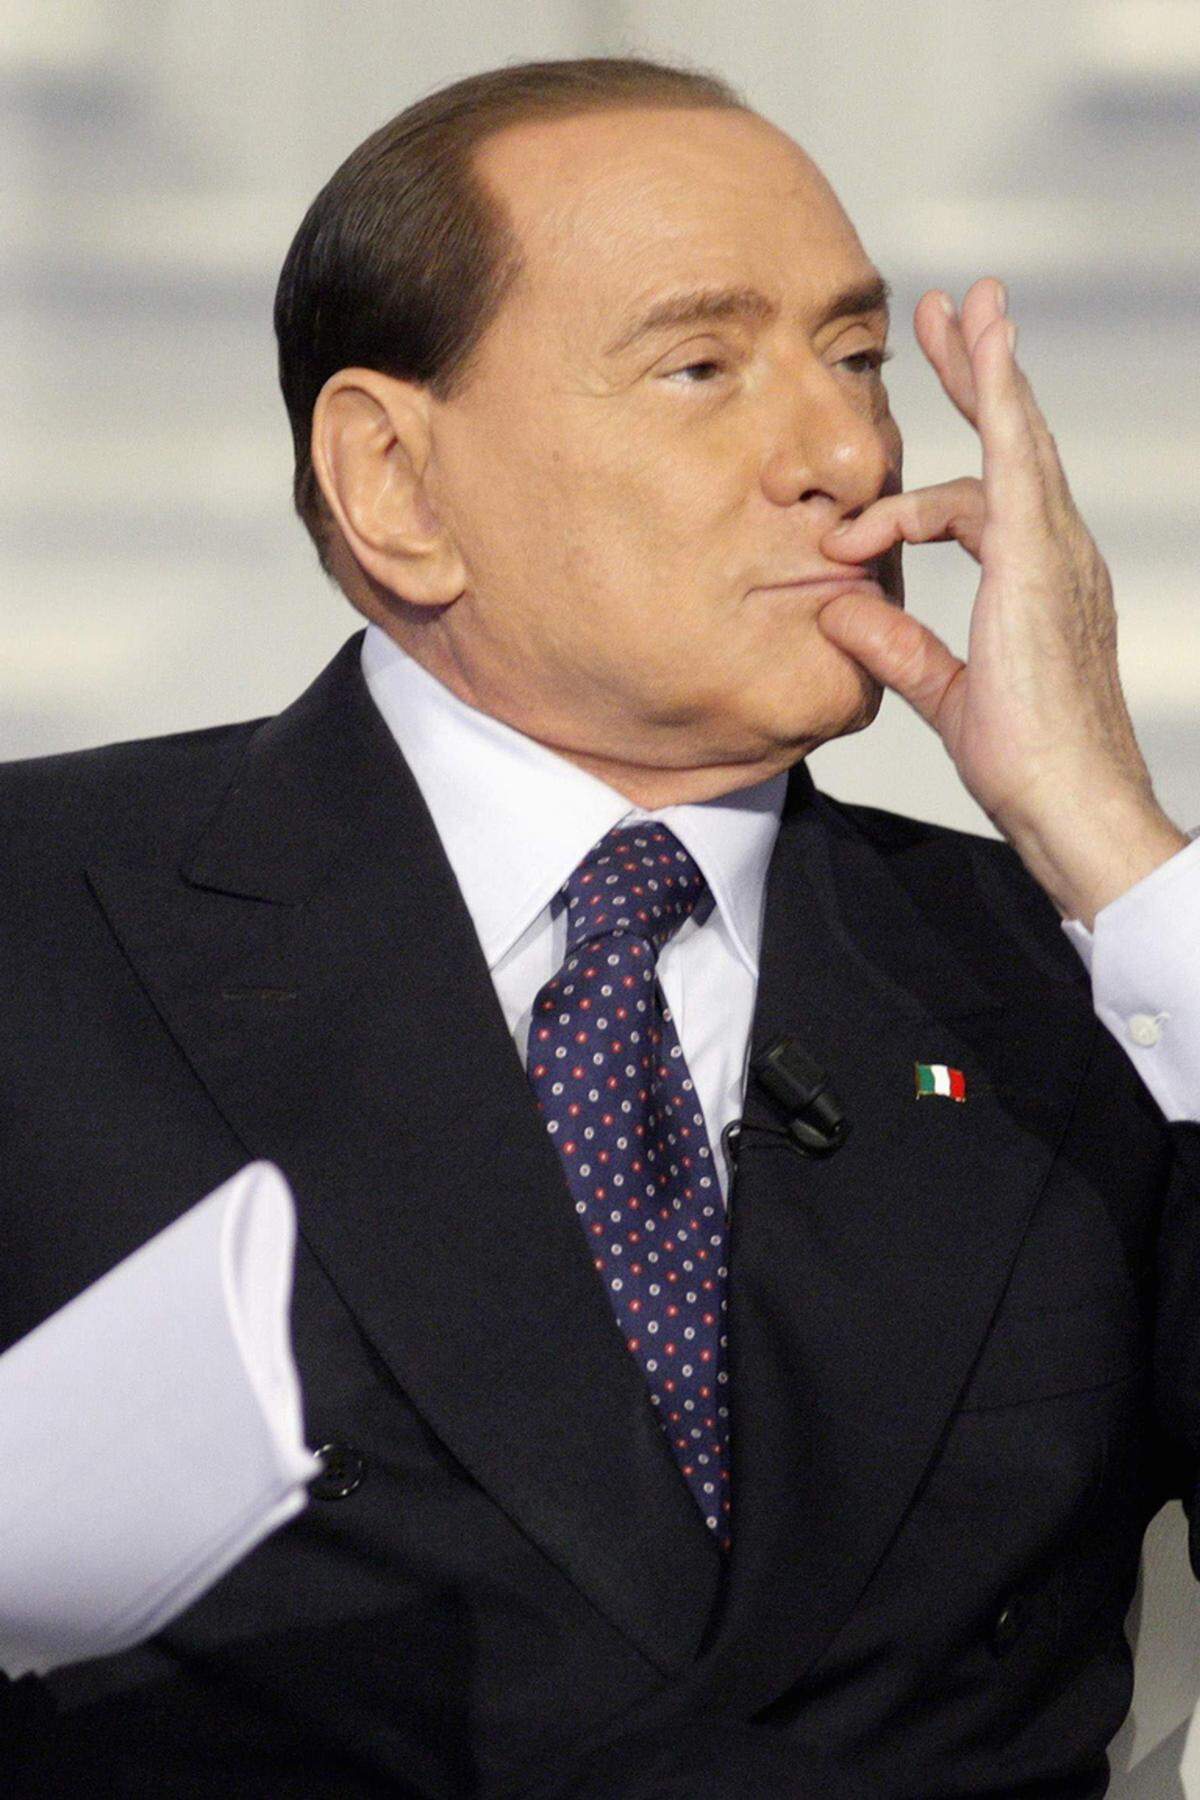 Beim Kauf des Verlagshauses Mondadori durch Berlusconis Medienfirma Fininvest sollen Schmiergelder geflossen sein; die Berufungsinstanzen erklärten den Fall 1998 für verjährt. Fininvest soll 1985 Schmiergelder an Richter gezahlt haben, um den Kauf des halbstaatlichen Unternehmens SME durch den Industriellen Carlo De Benedetti zu verhindern.